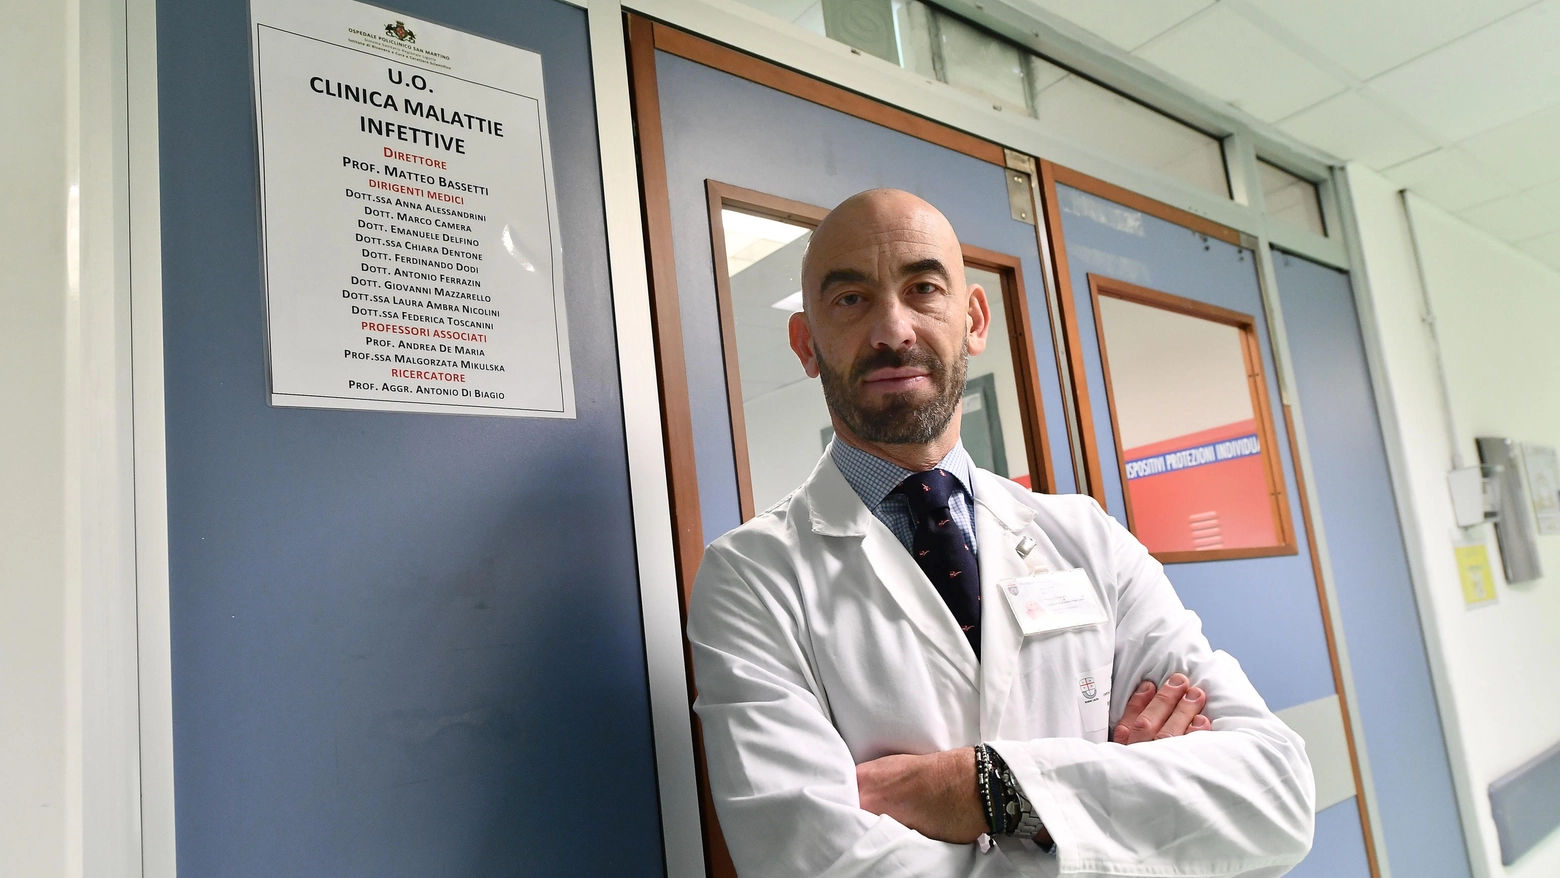 Il direttore Malattie infettive dell'ospedale policlinico San Martino di Genova ha commentato l’aumento dei casi anche alla luce delle recenti polemiche sull’obbligo vaccinale